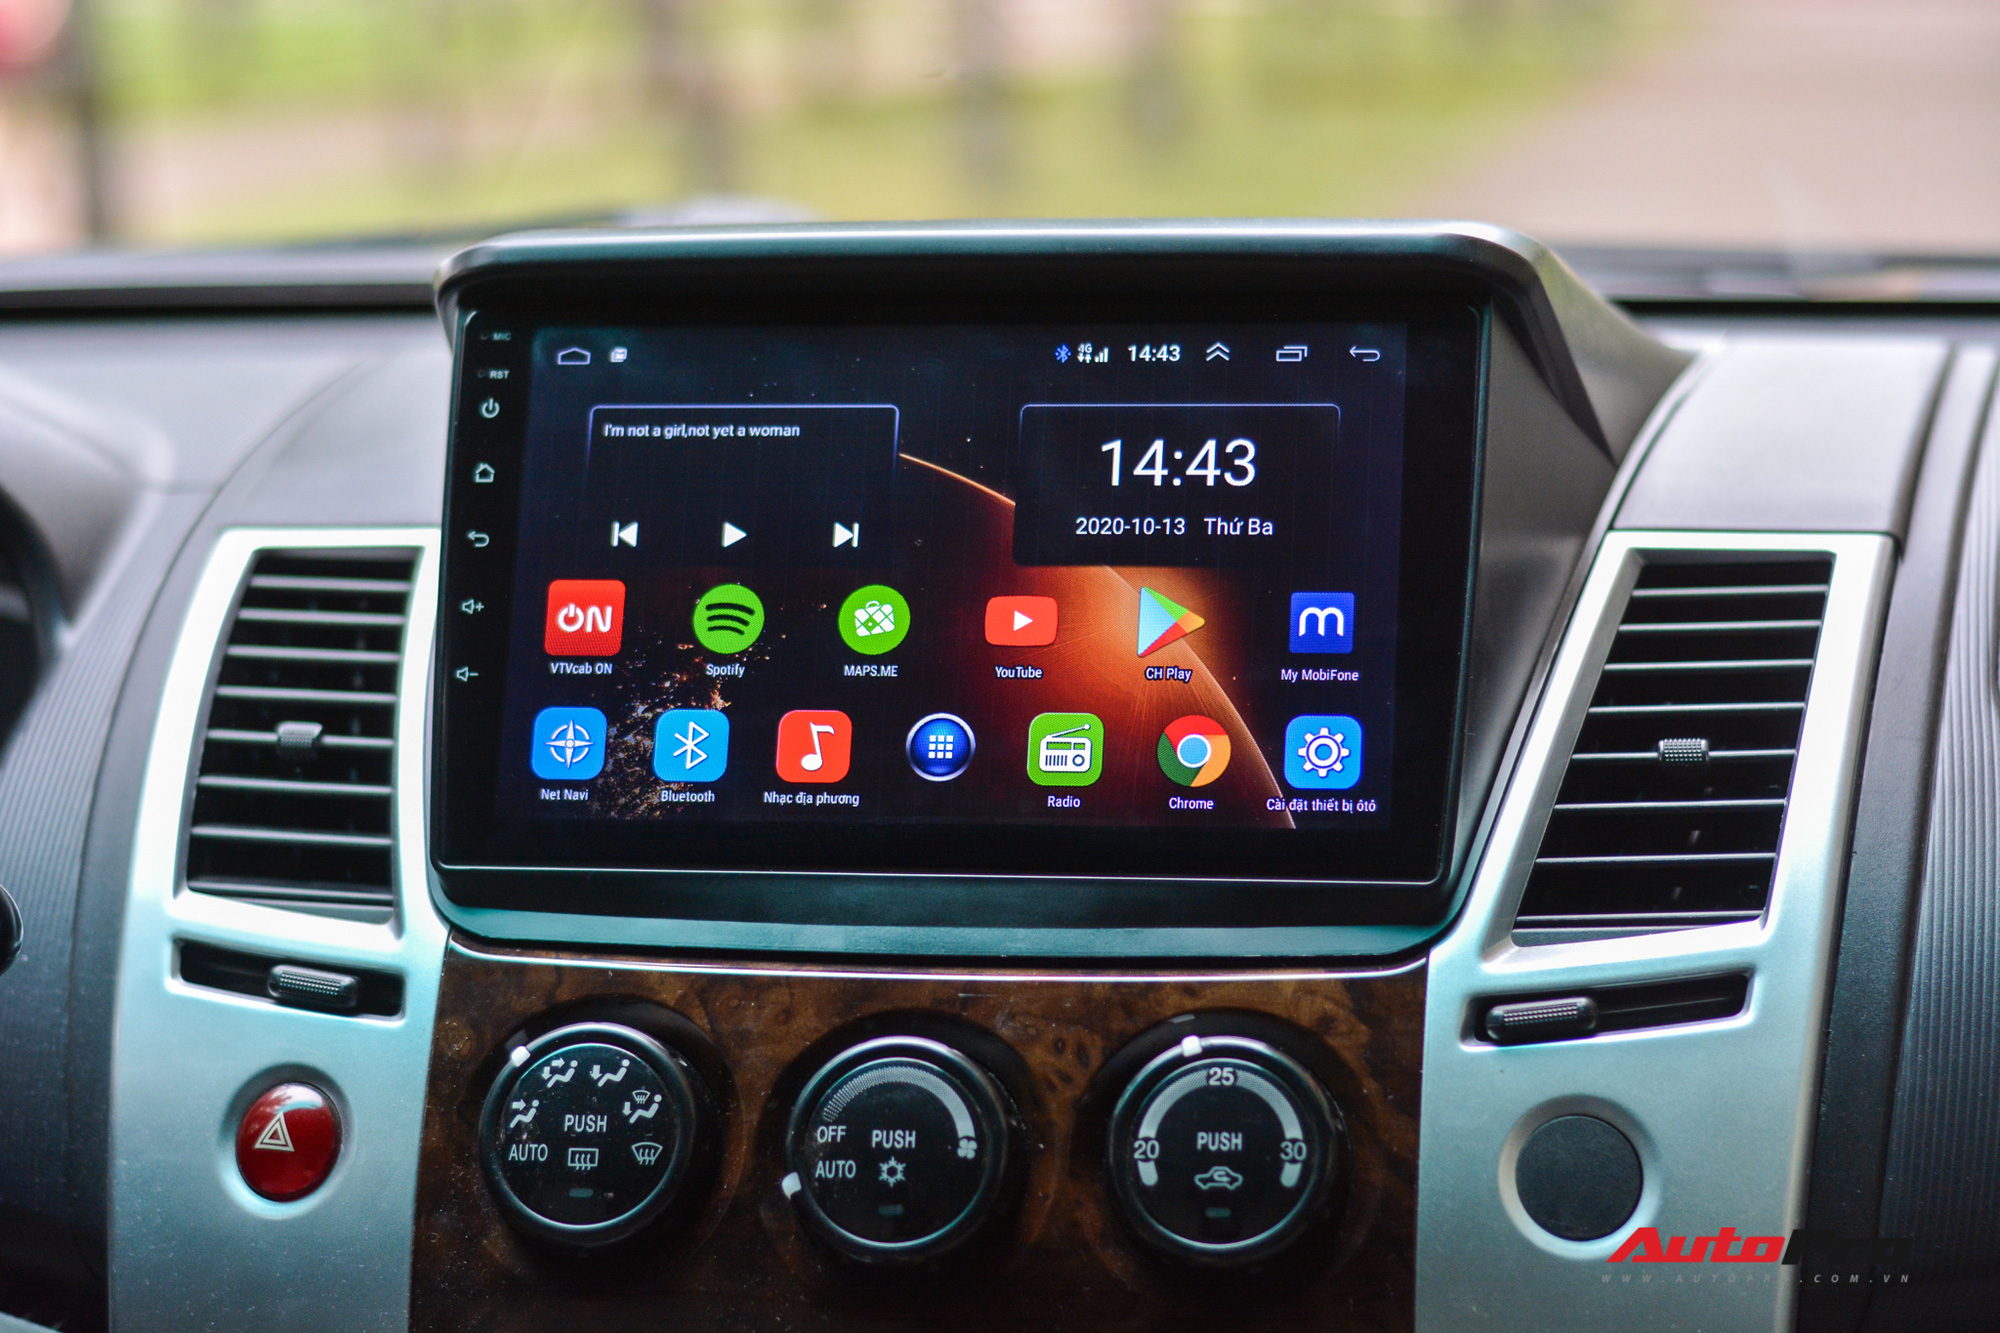 Nâng cấp màn hình Android cho ô tô: Liệu có xứng đáng? - Ảnh 1.